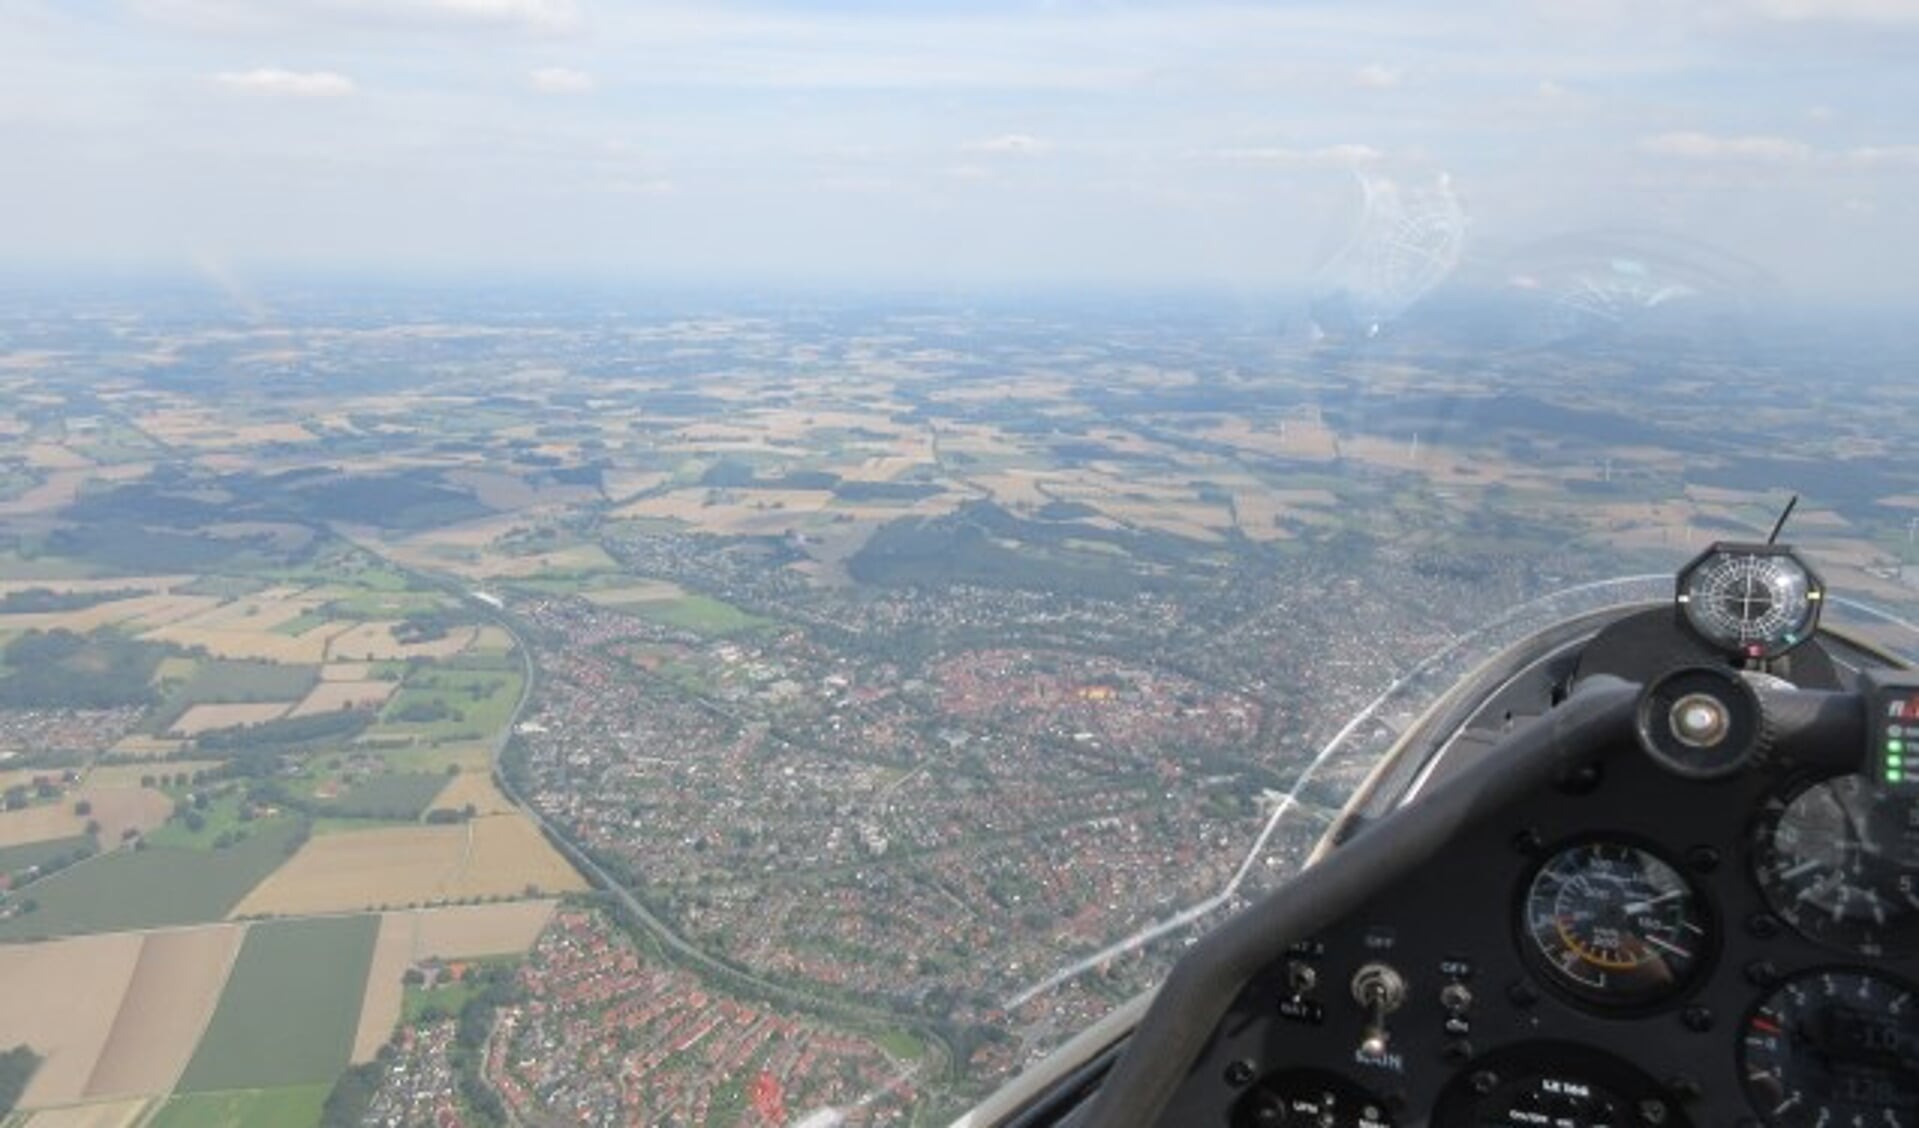 Prachtige beelden boven onder andere De Bilt en Bilthoven vanuit de cockpit. FOTO: Jan Schets